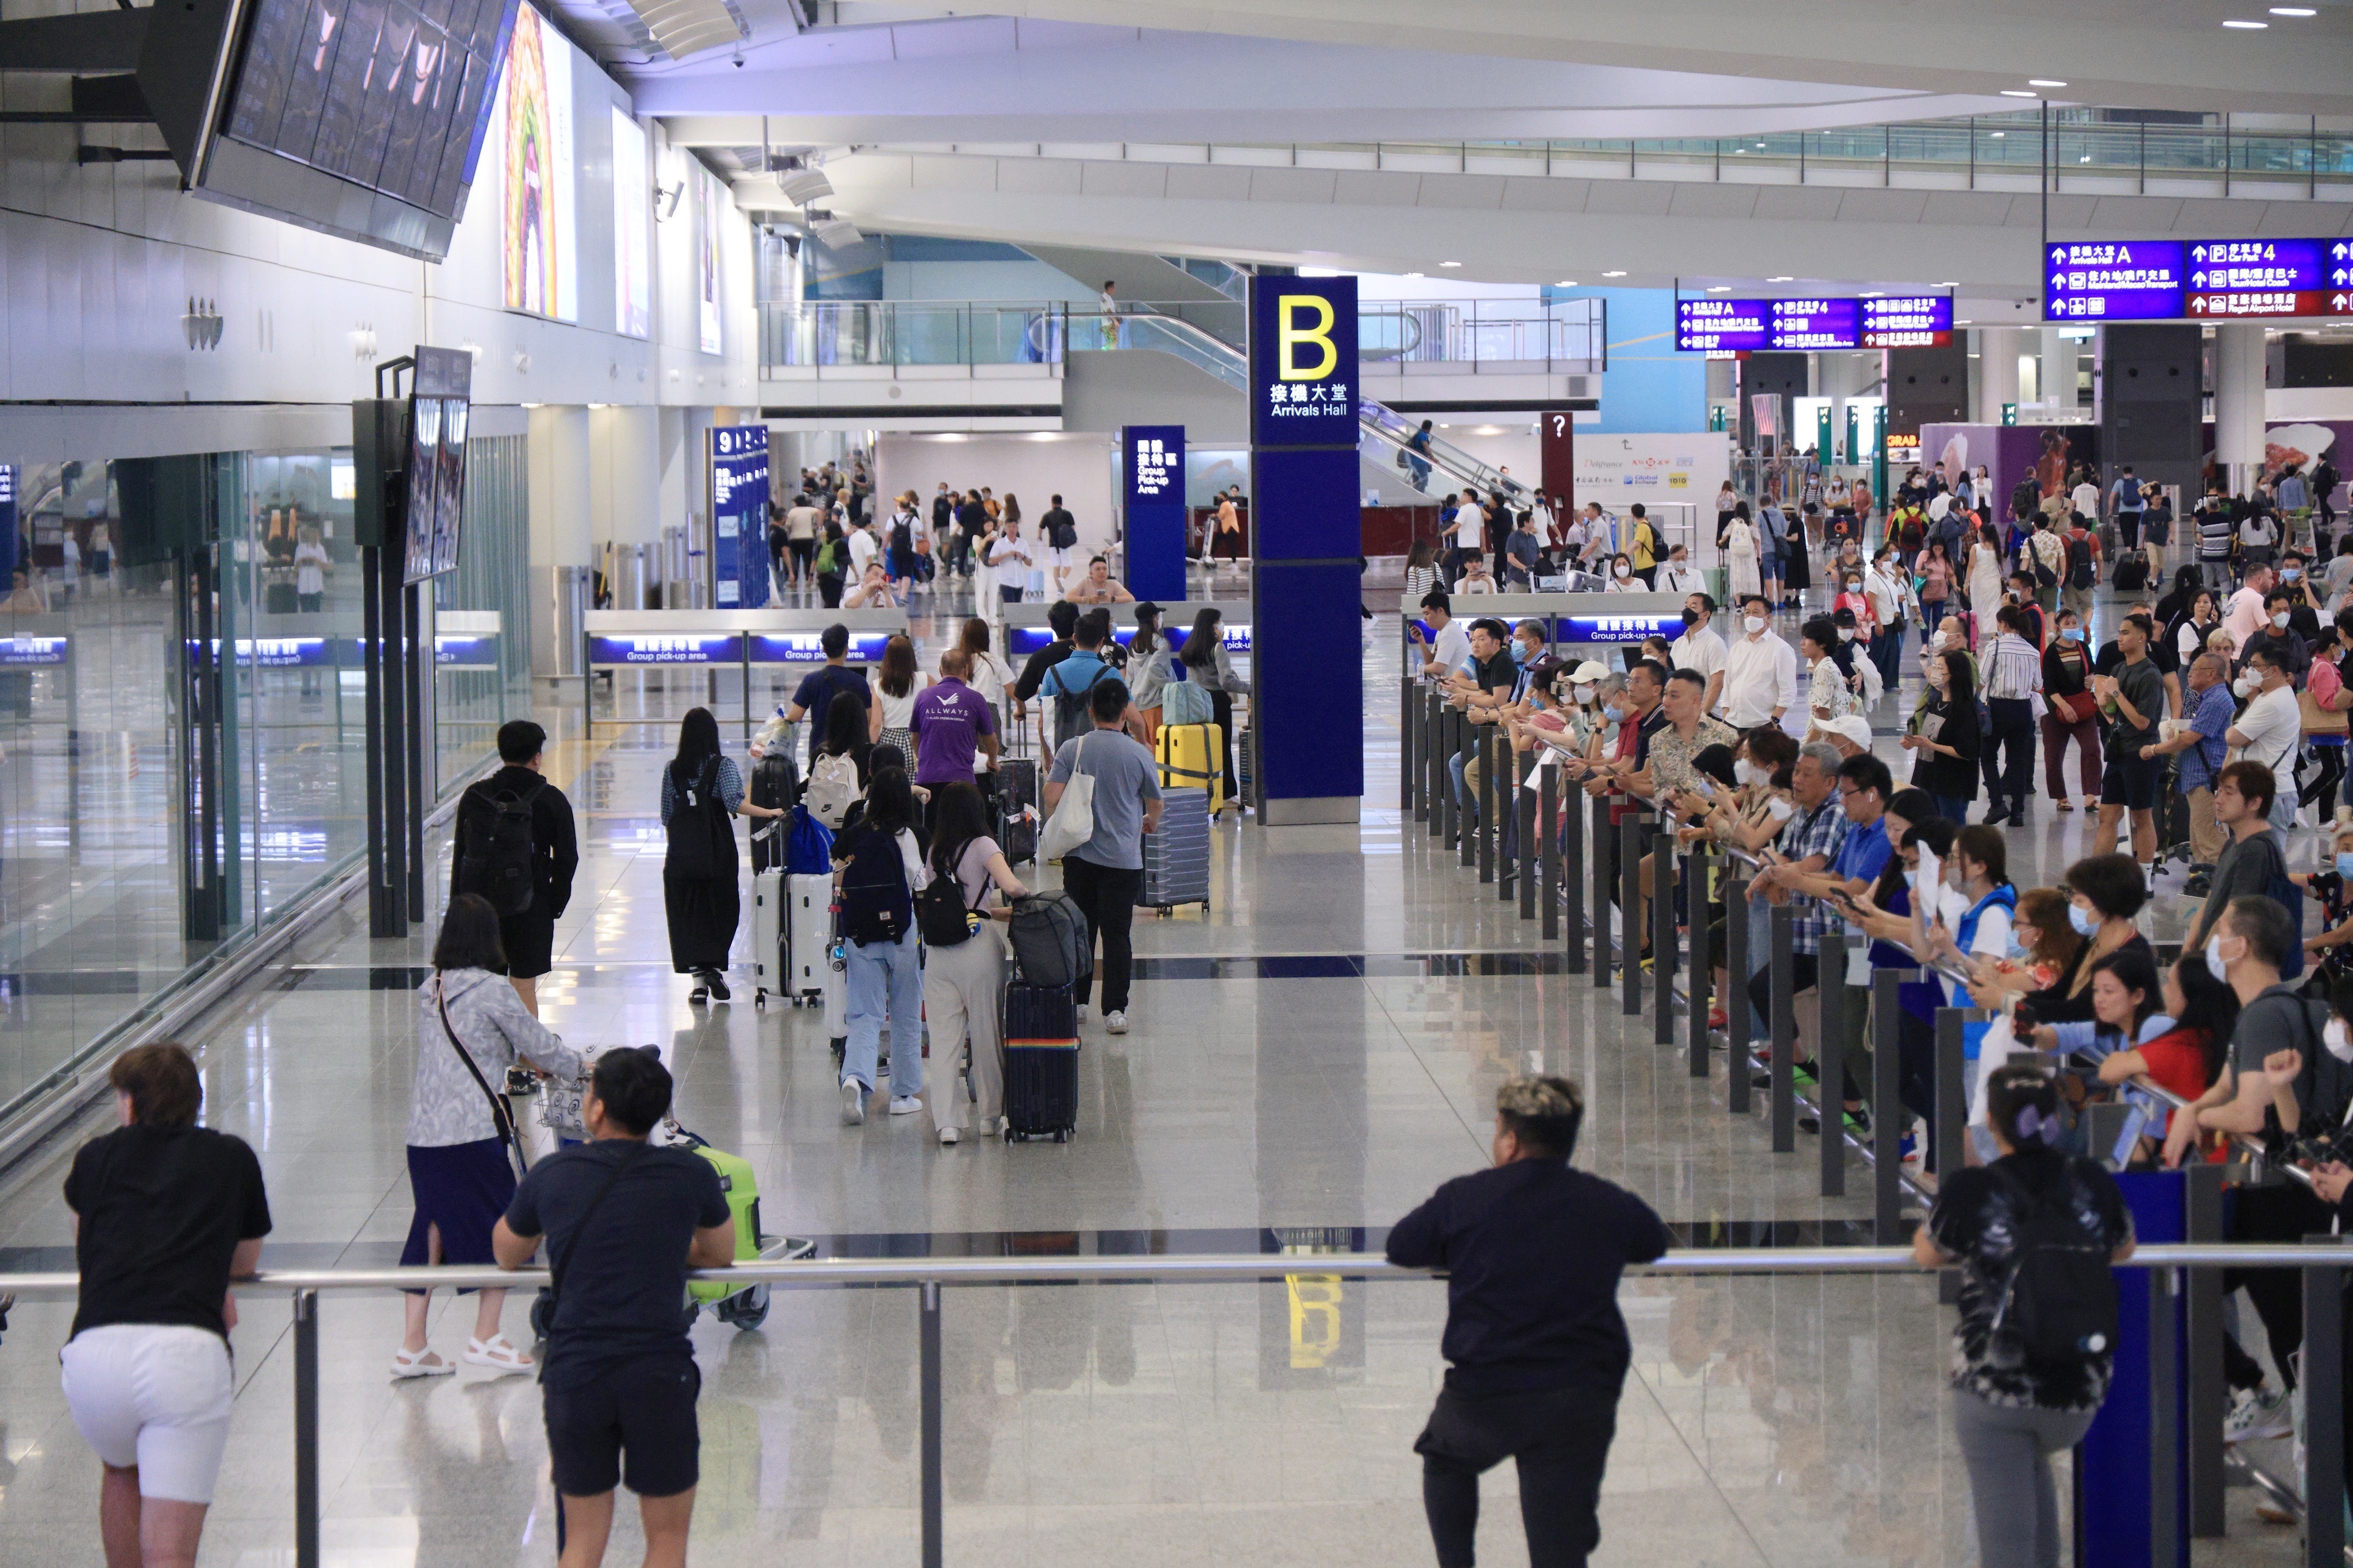 26歲男子涉在香港機場
 穿有煽動字句衣服被捕